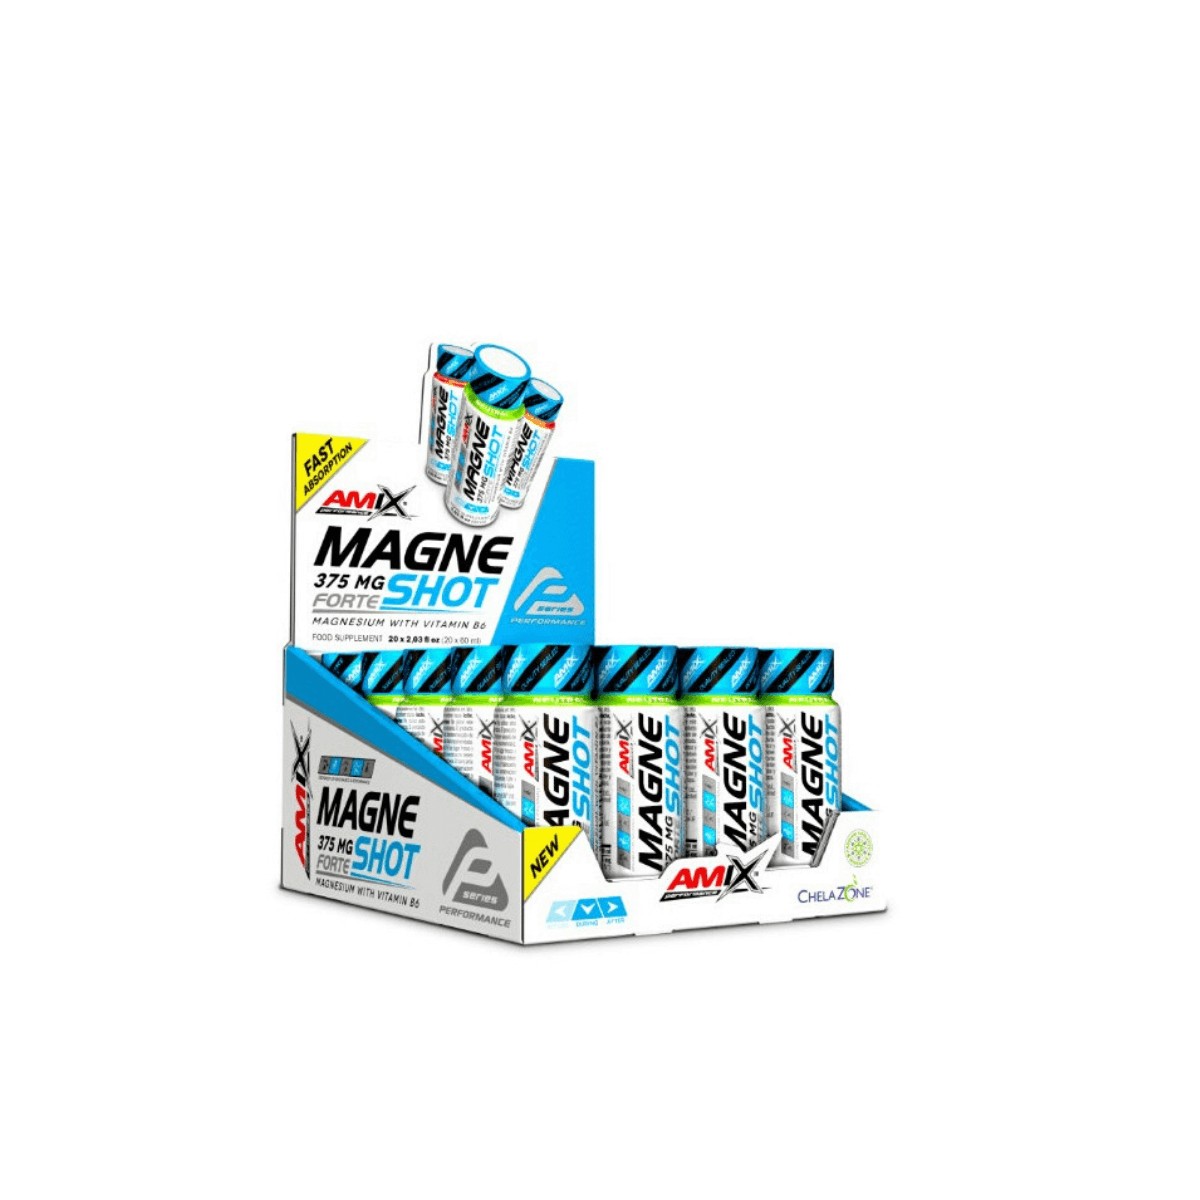 Pro Performance günstig Kaufen-AMIX MagneShot Forte Mango 375 MG 20x60ML. AMIX MagneShot Forte Mango 375 MG 20x60ML <![CDATA[AMIX MagneShot Forte Mango 375 MG 20x60ML AMIX Performance MagneShot Forte 375 mg ist ein neues Produkt AMIX PERFORMANCE, ein ultrakonzentriertes Magnesium, das 